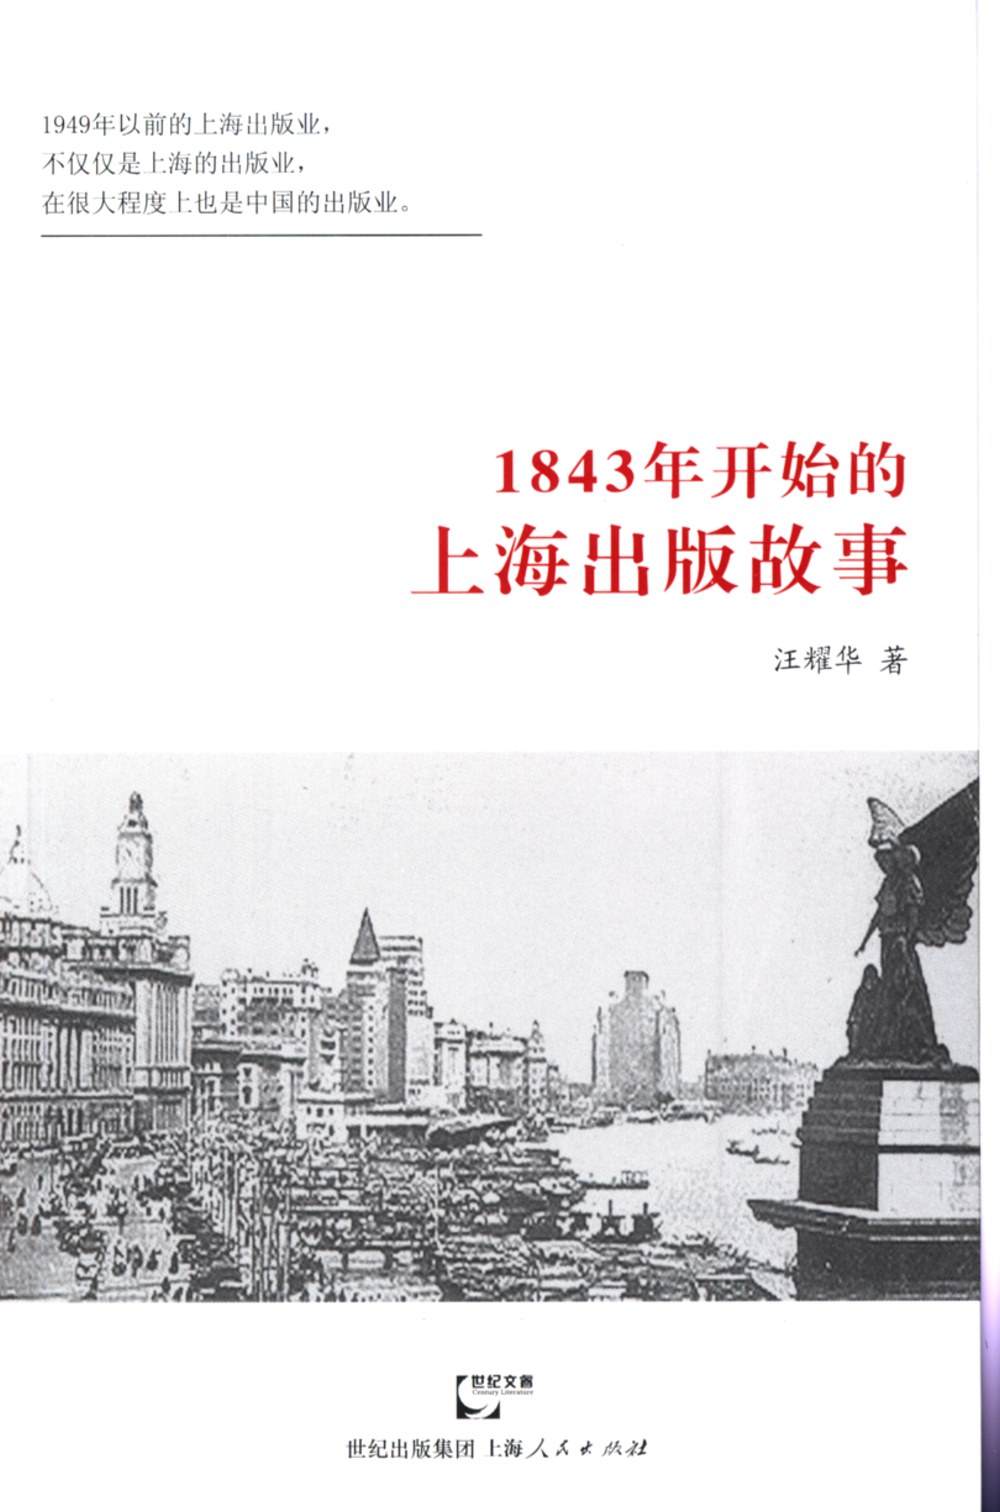 1843年開始的上海出版故事